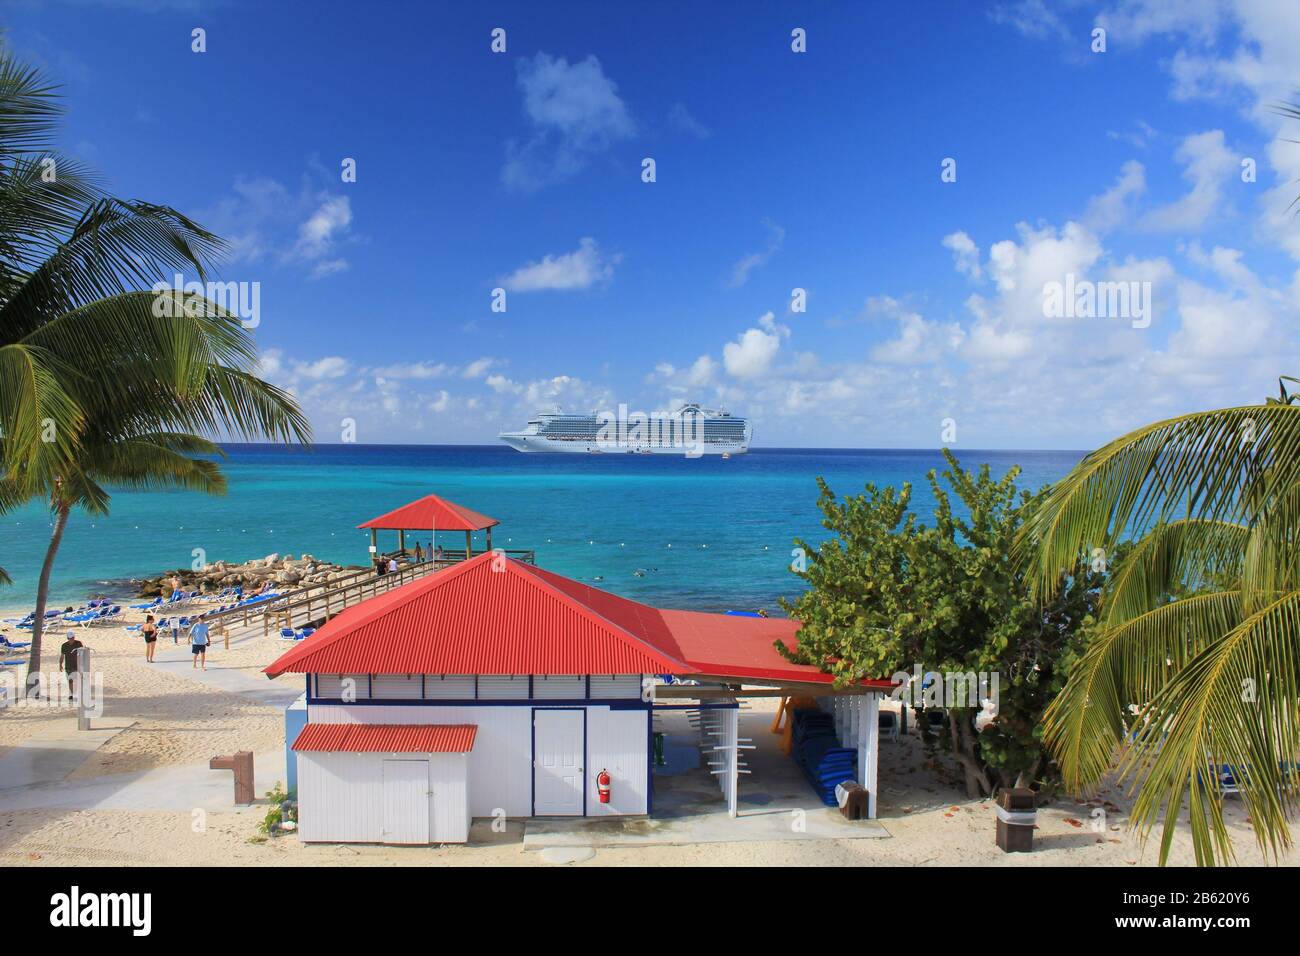 Eleuthera, BAHAMAS - 9. FEBRUAR 2014 : Blick von Princess Cays auf das Schiff Crown Princess, das auf See vor Anker liegt. Princess Cays ist ein privates Resort von Princess Stockfoto